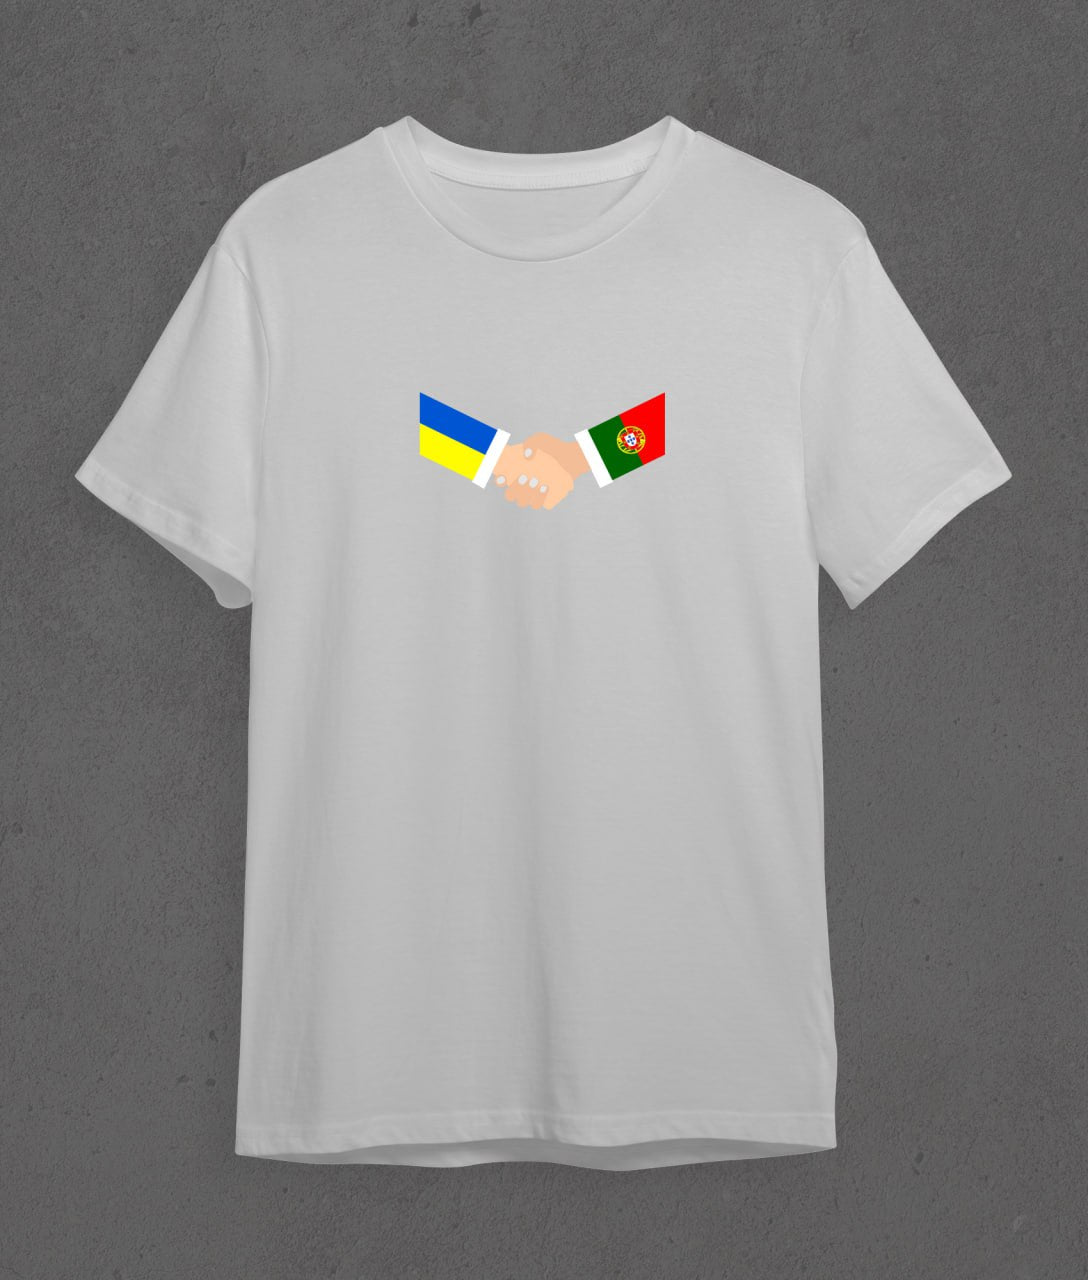 T-shirt Portugal + Ukraine (handshake)